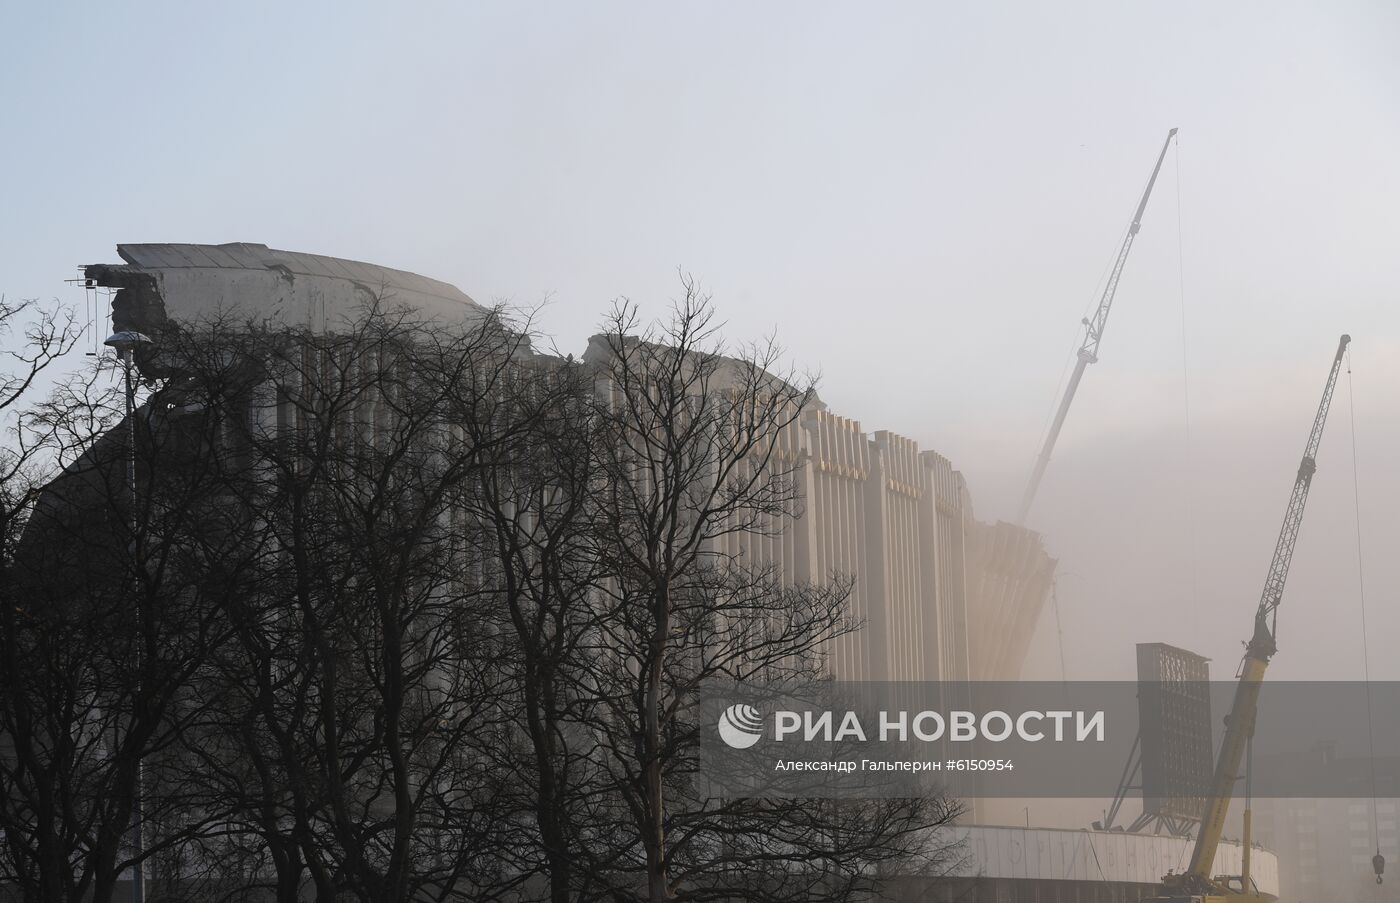 В Петербурге обрушилась крыша спортивно-концертного комплекса